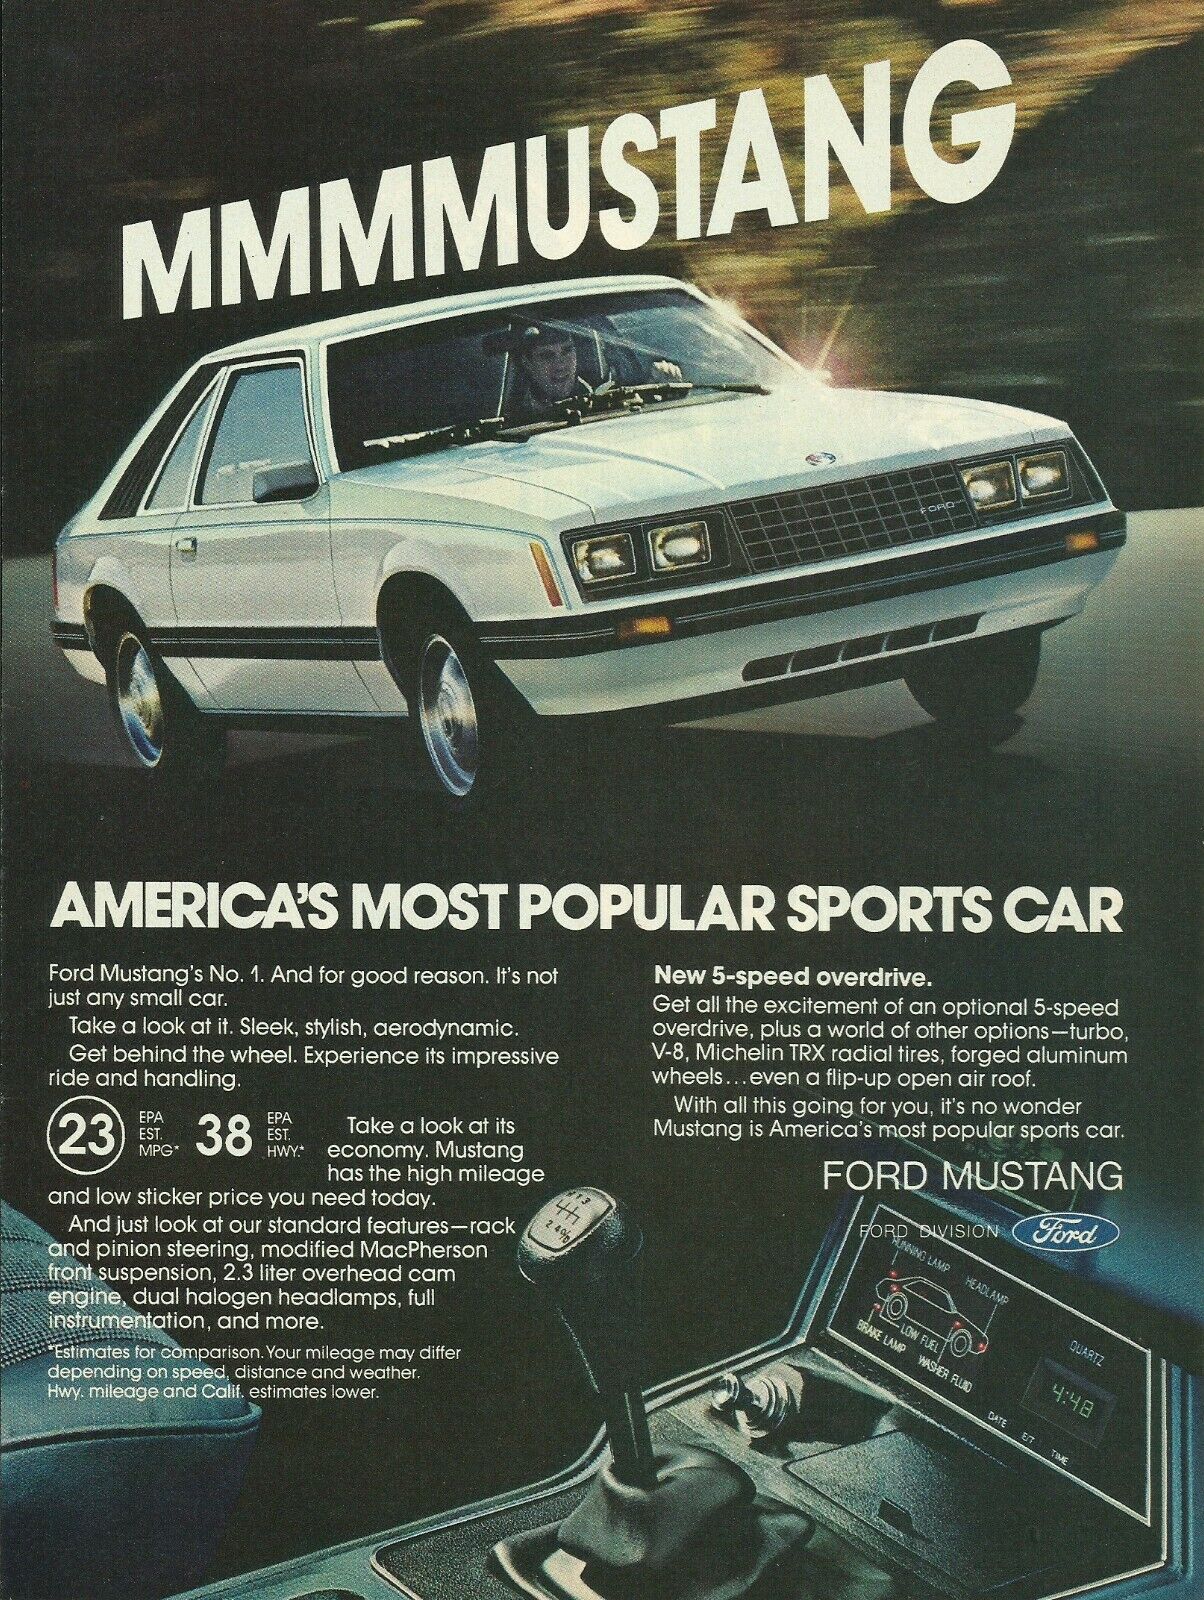 Ford påstod at Mustang var USAs mest populære sportsbil. Men har Mustang noensinne egentlig vært en sportsbil.